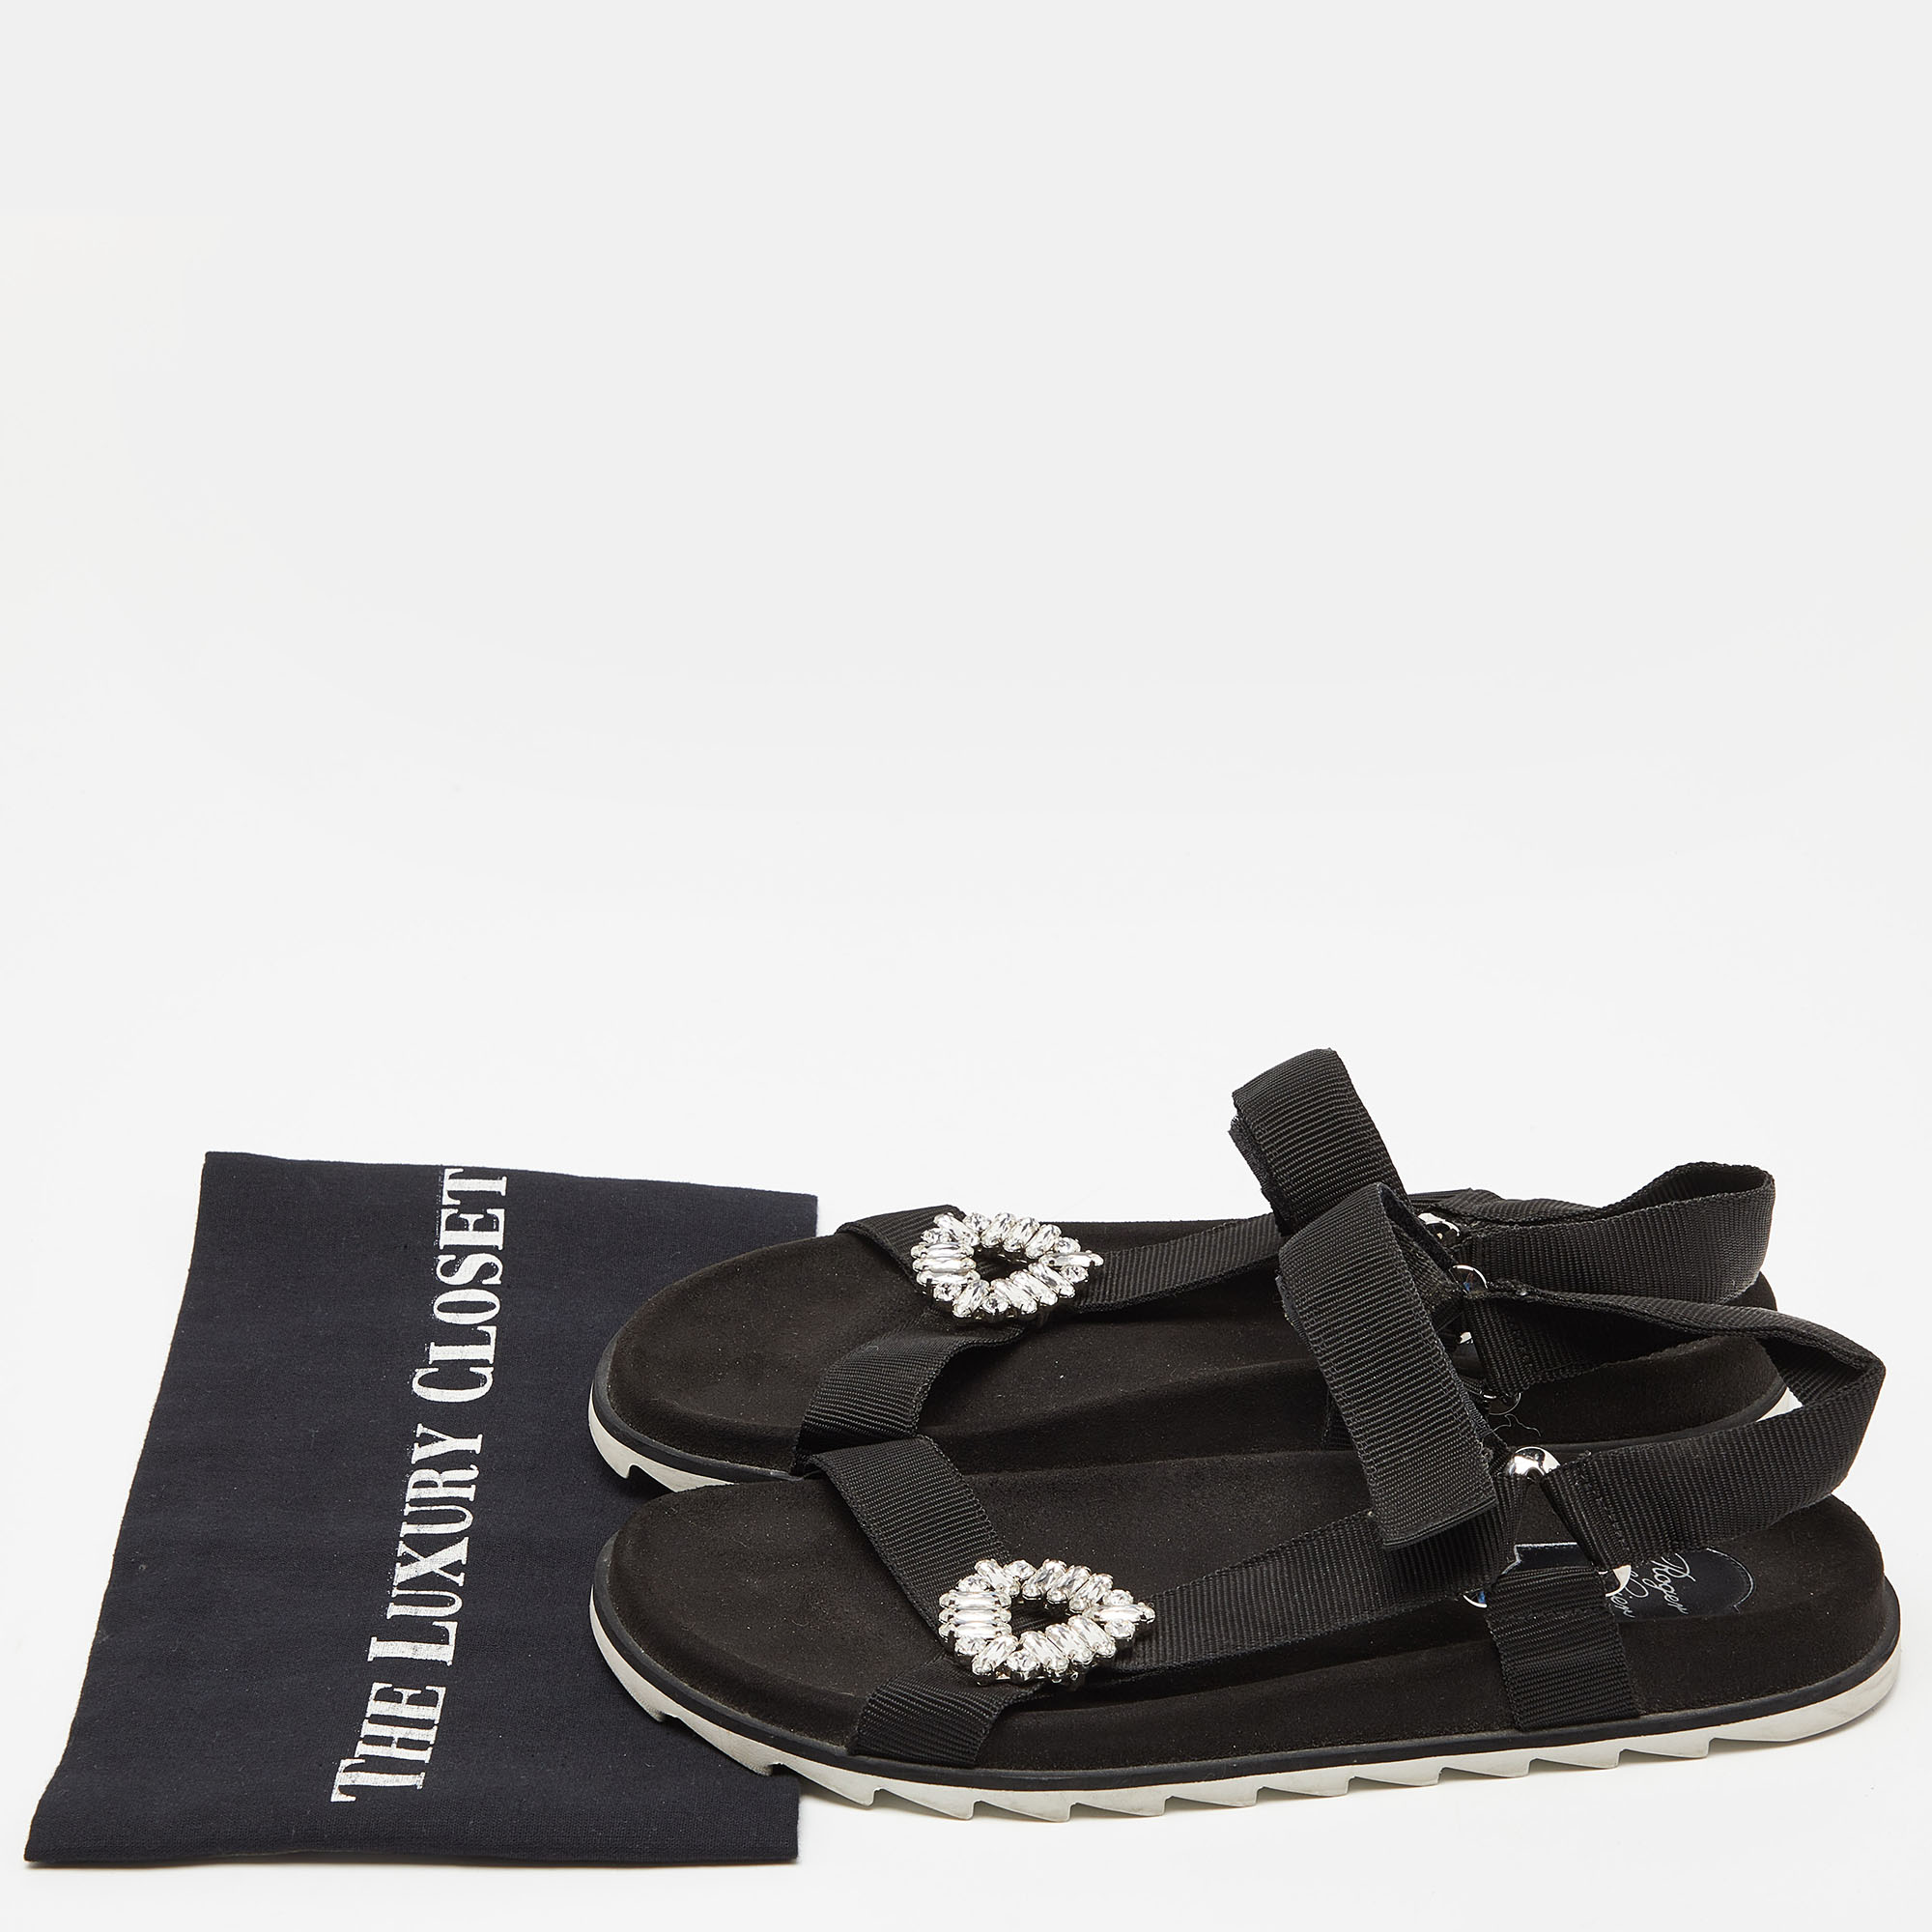 Roger Vivier Black Fabric Crystal Embellished Buckle Trekky Viv'  Flat Sandals Size 40